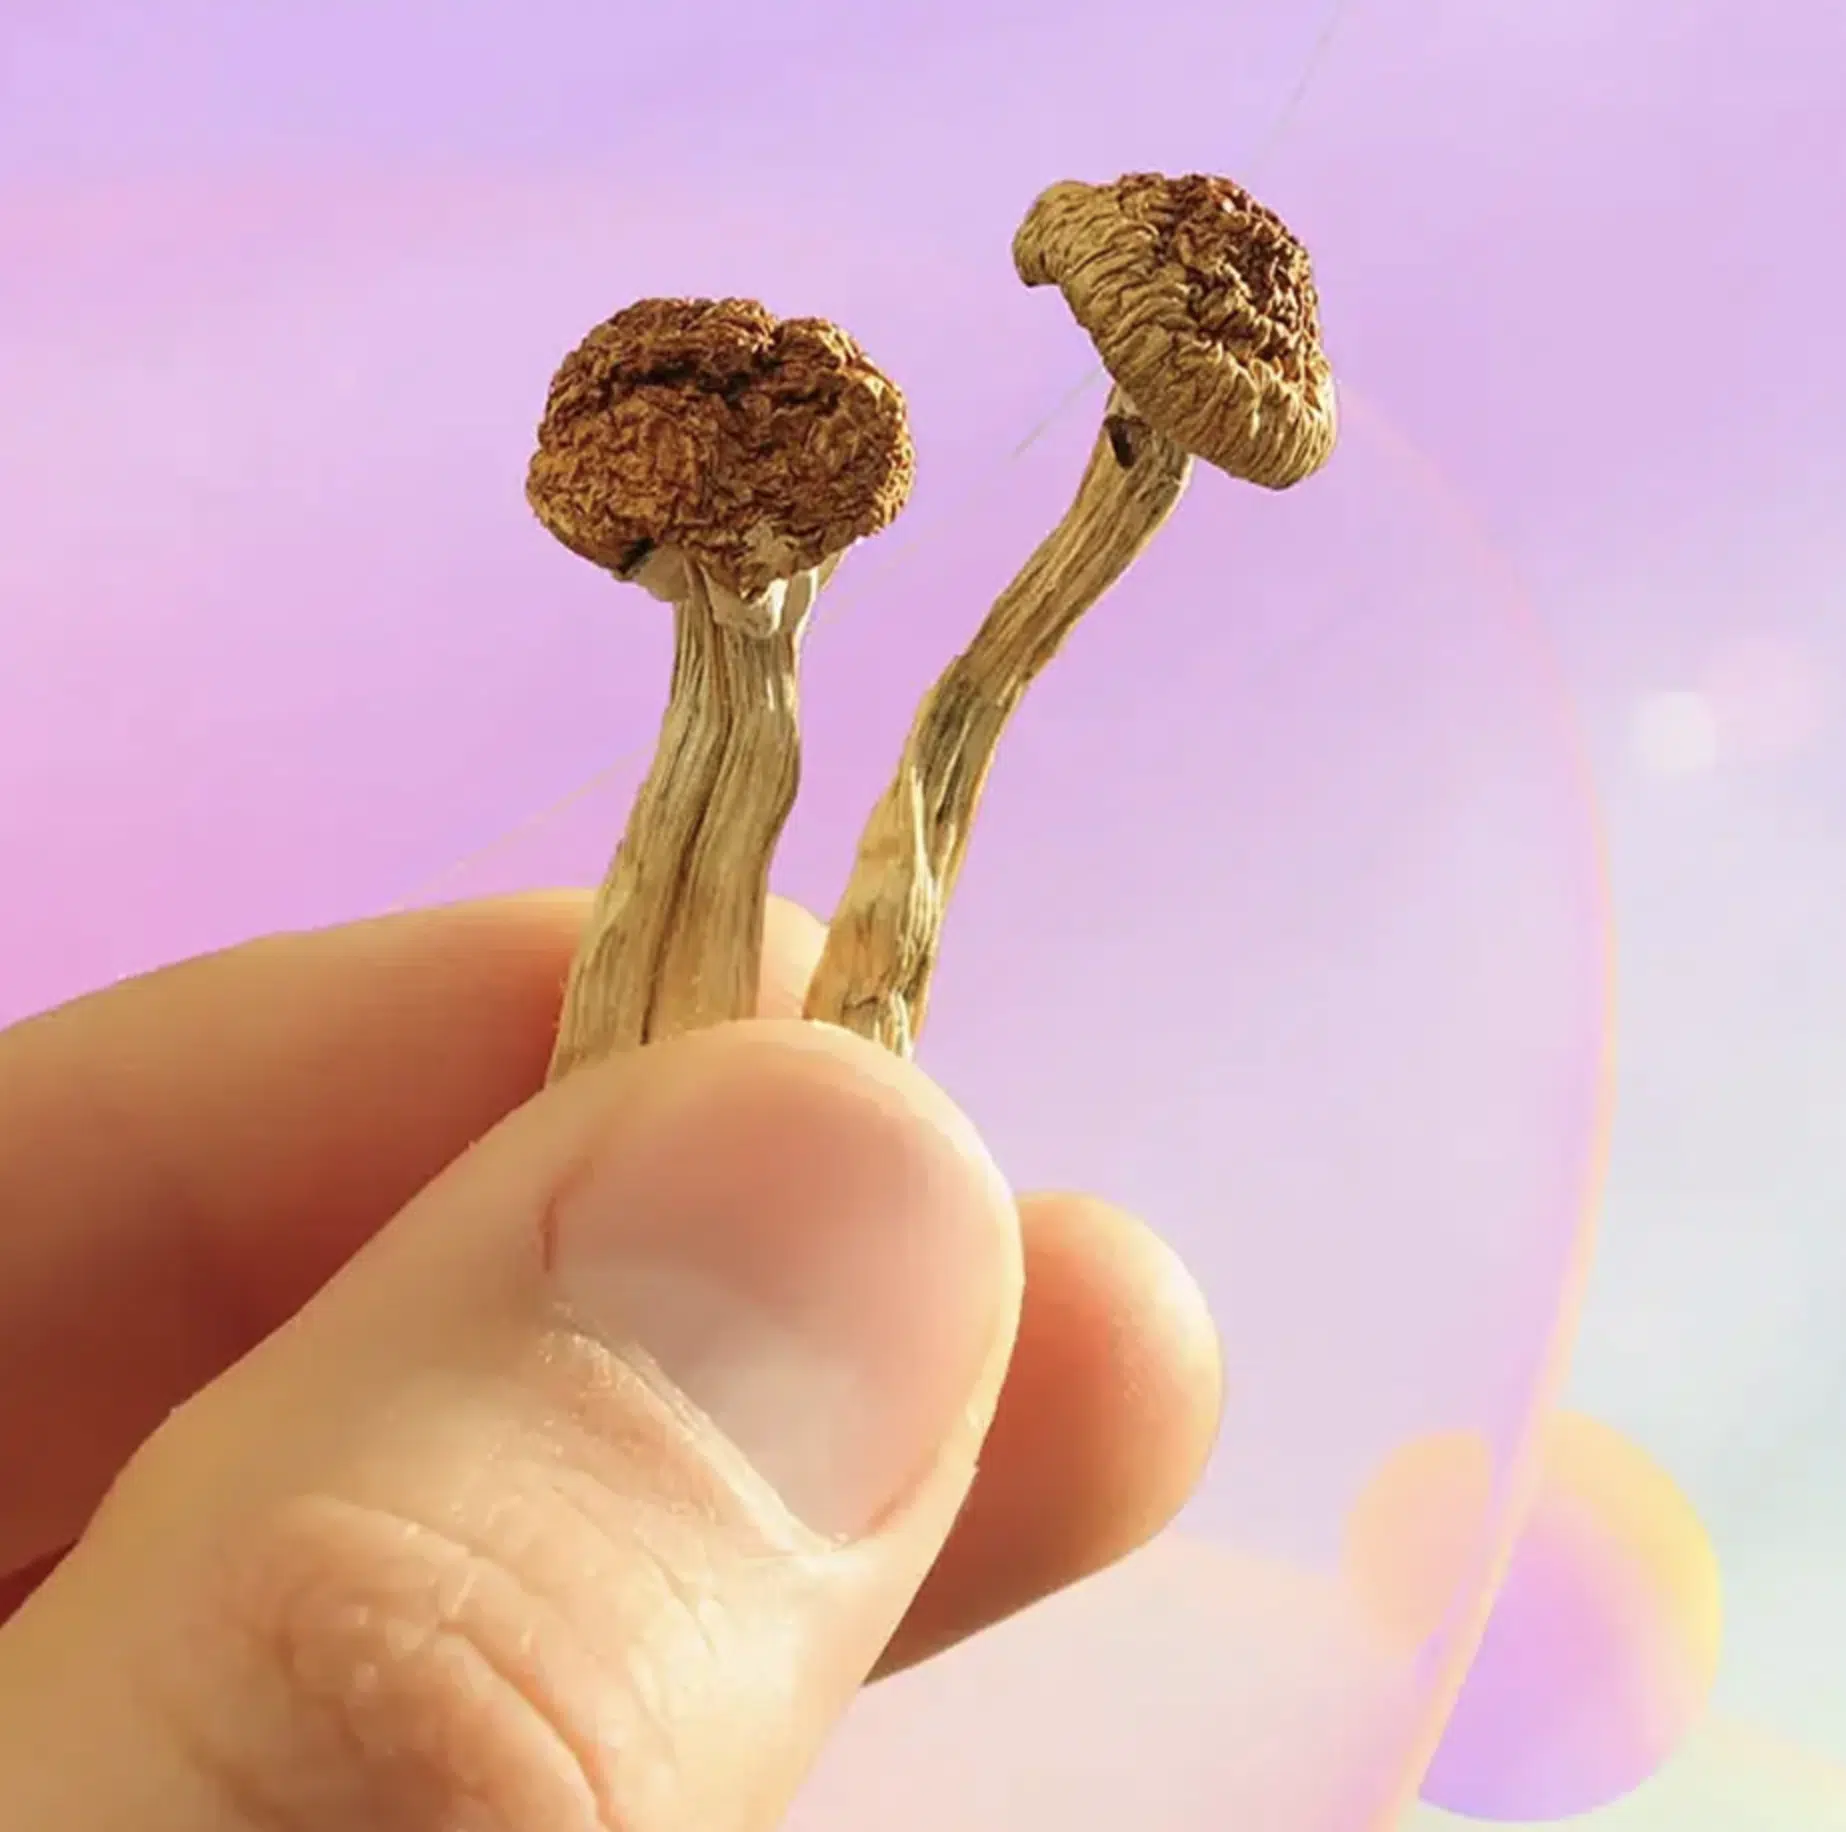 mushroom fingers